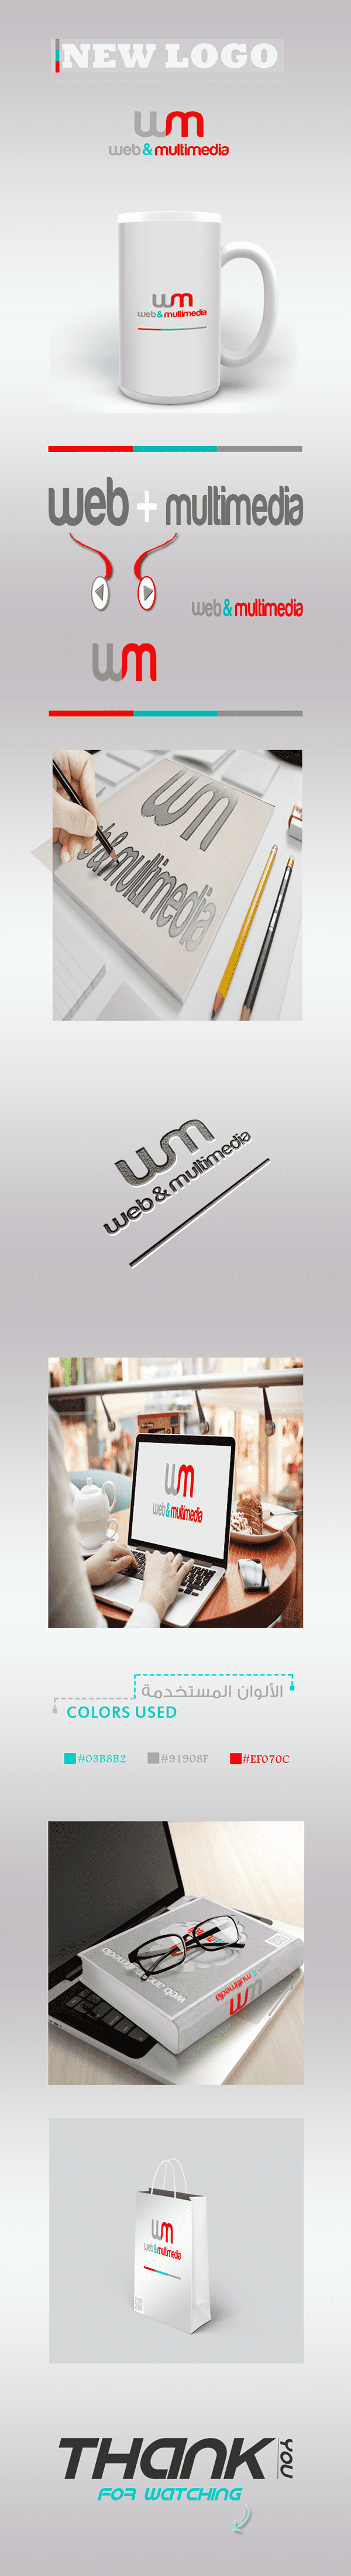 لوجو / شعار لقسم Web development and Multimedia